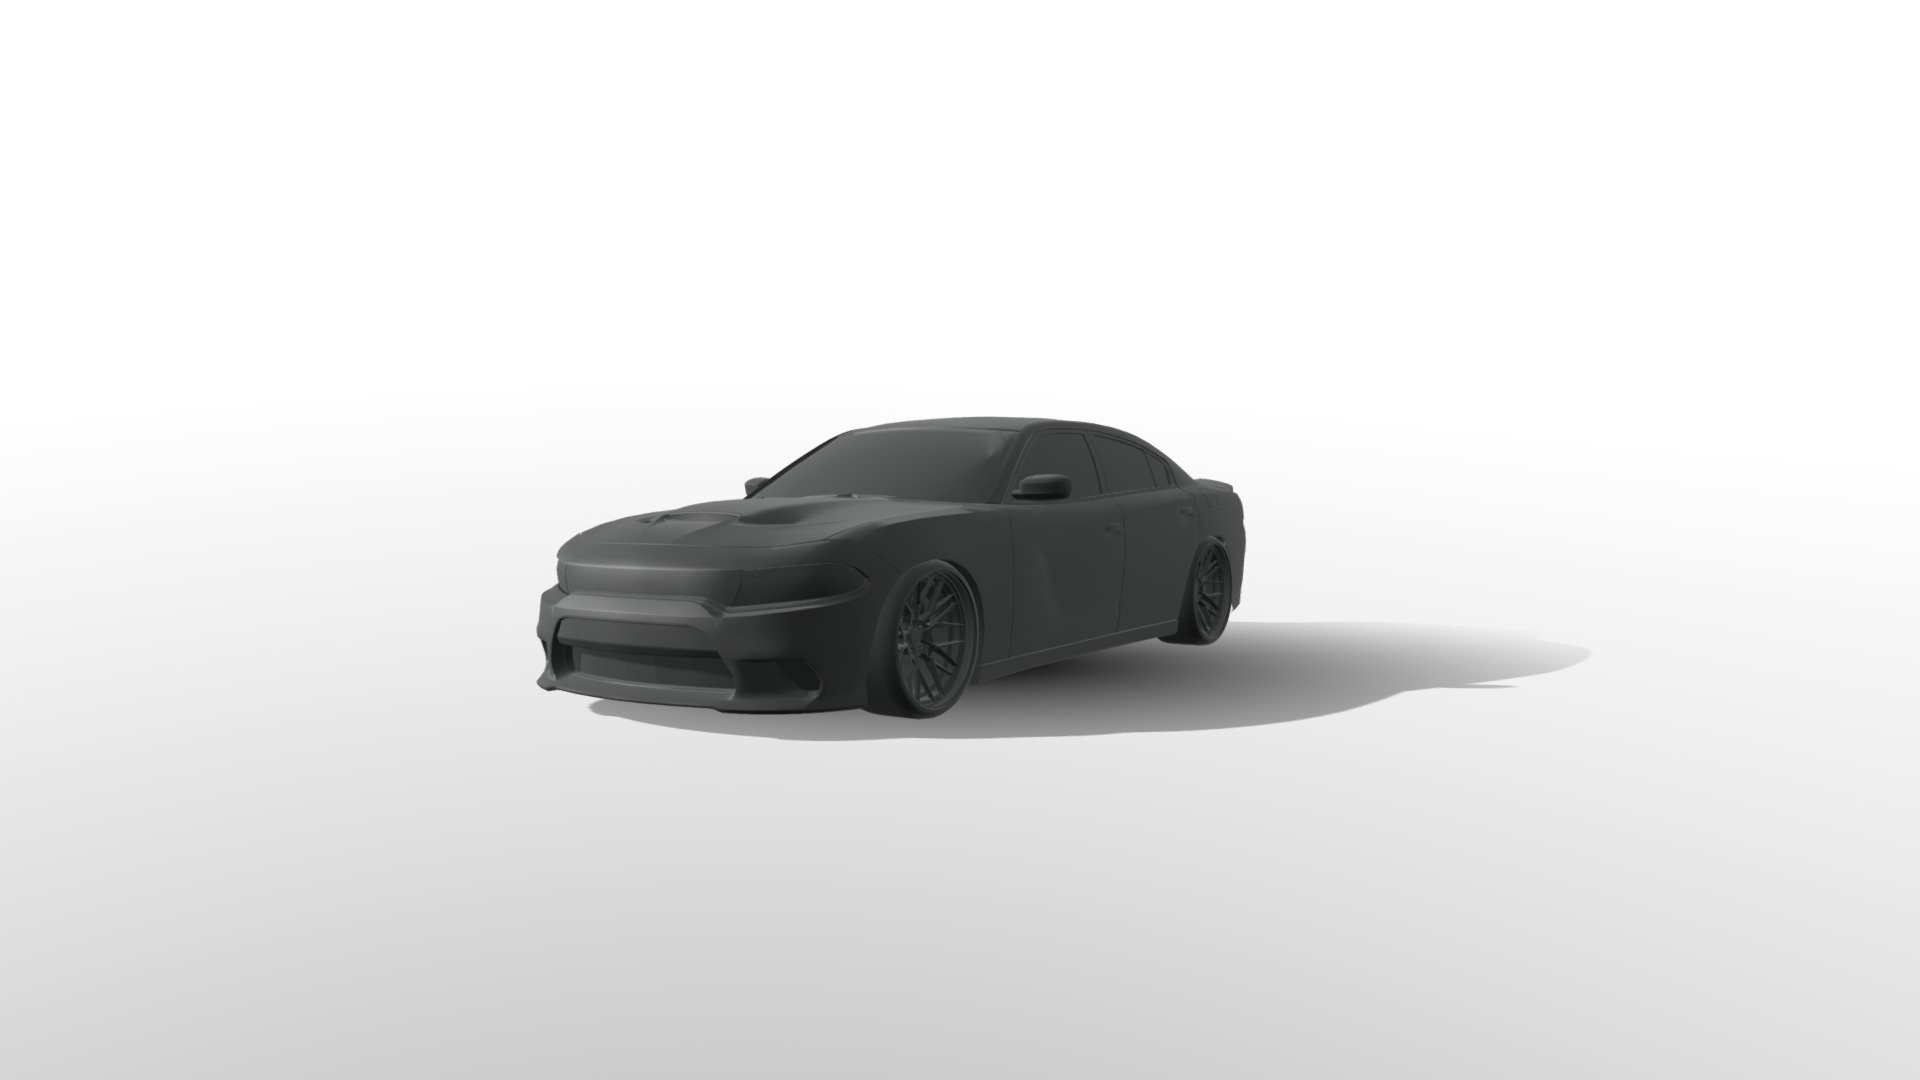 Archivo 3D gratis Soporte para teléfono móvil Dodge Charger 2015-2017  📱・Modelo para descargar y imprimir en 3D・Cults